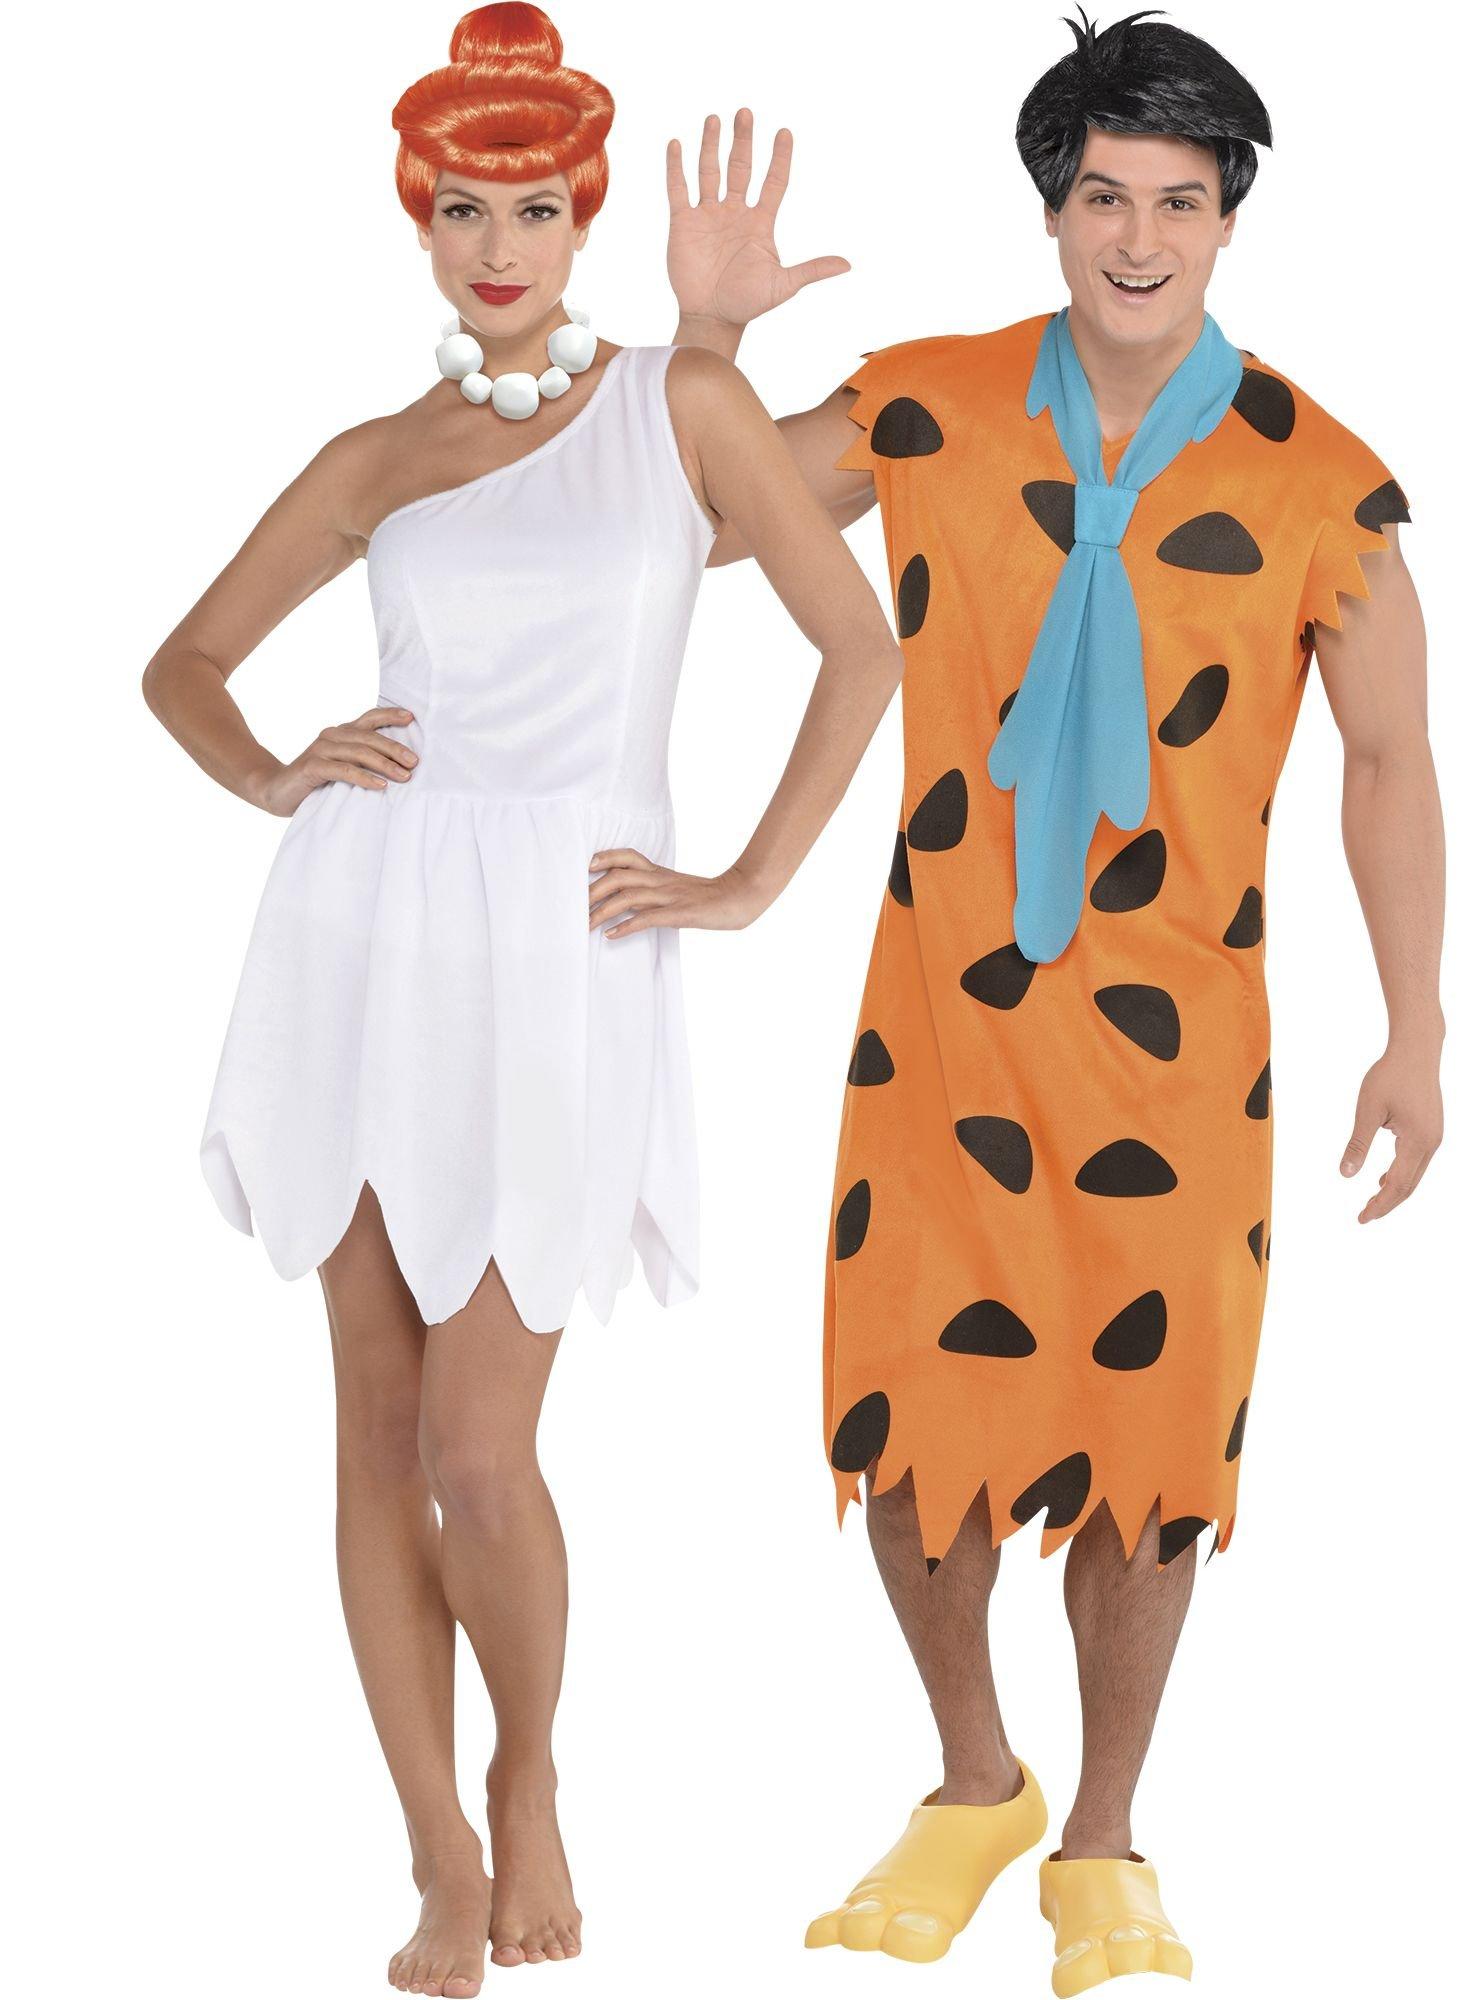 Wilma Flintstone Costume, Flintstone Birthday Dress, Family Flintstone ...